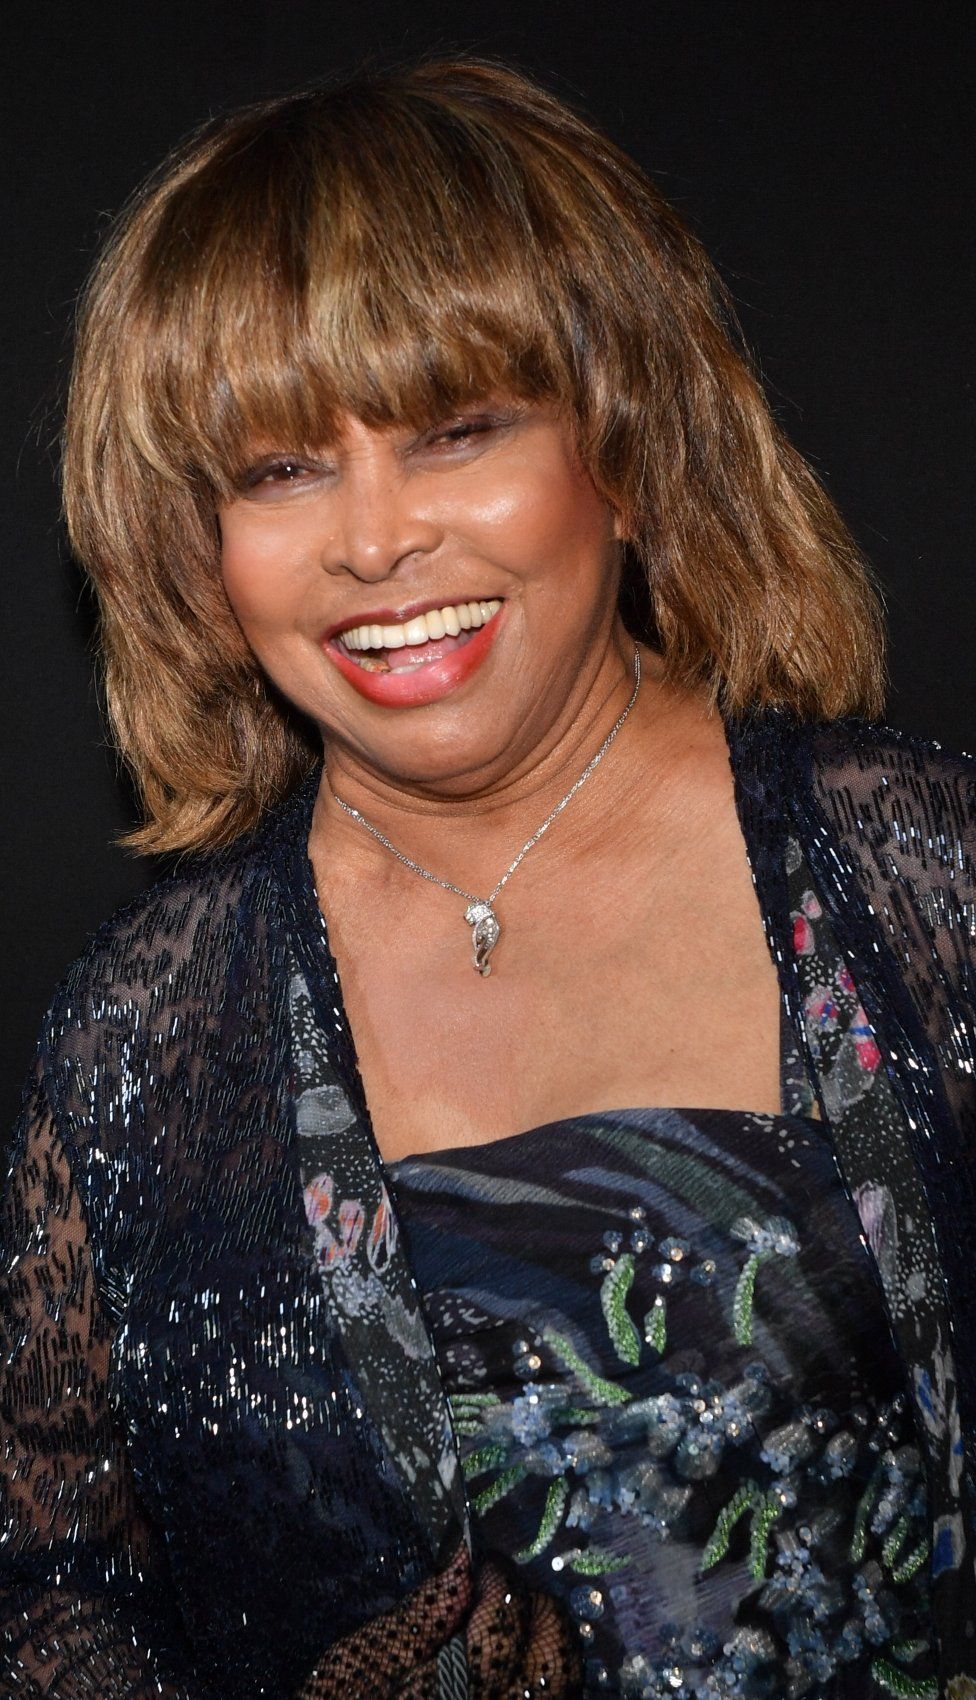 Tina Turner smiling at the camera